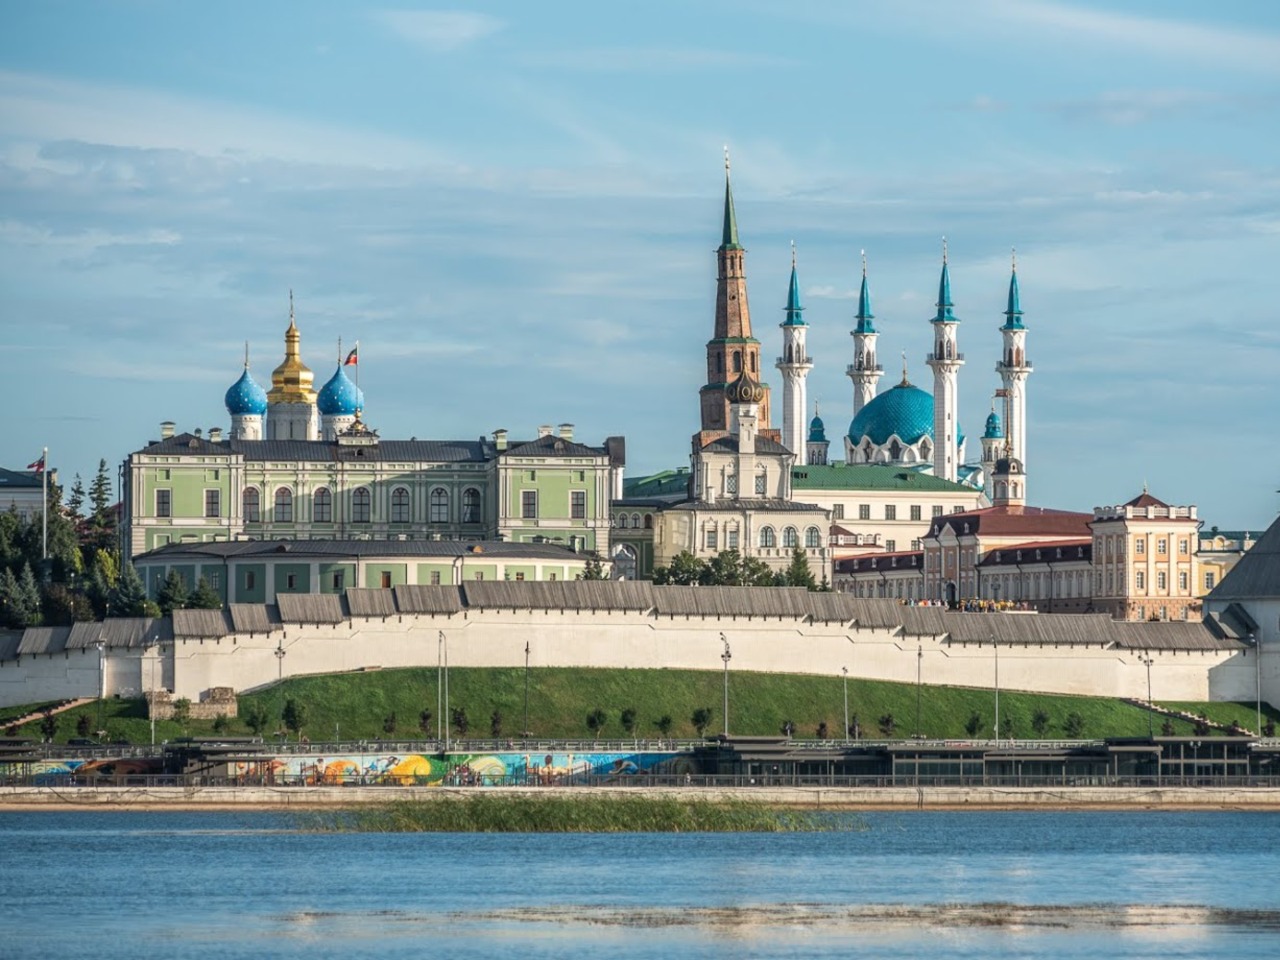 Сердце столицы Татарстана — Казанский кремль  | Цена 5000₽, отзывы, описание экскурсии